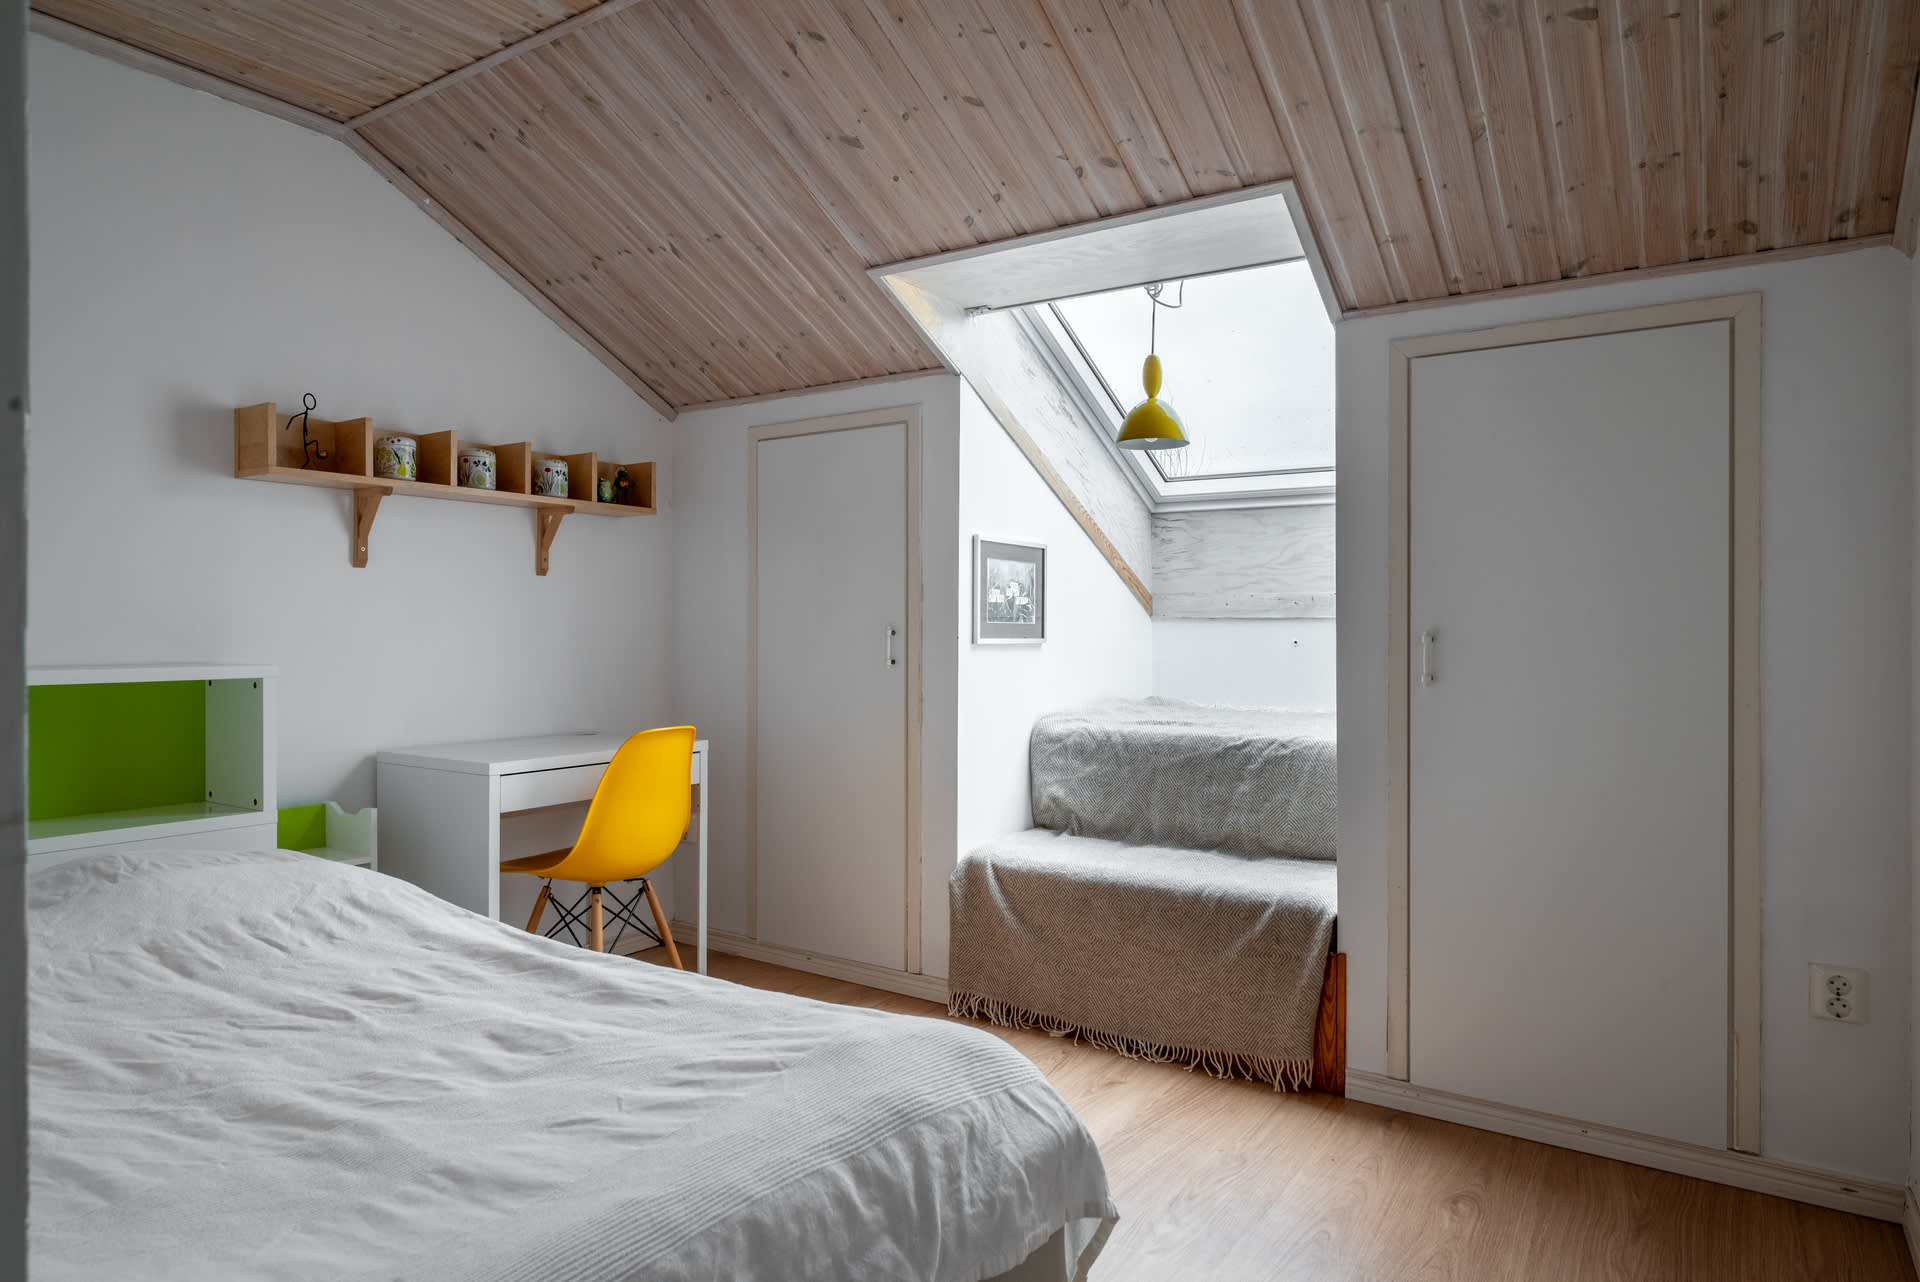 Sovrum 4 på övre våning med fint ljusinsläpp och praktisk platsbyggd förvaring